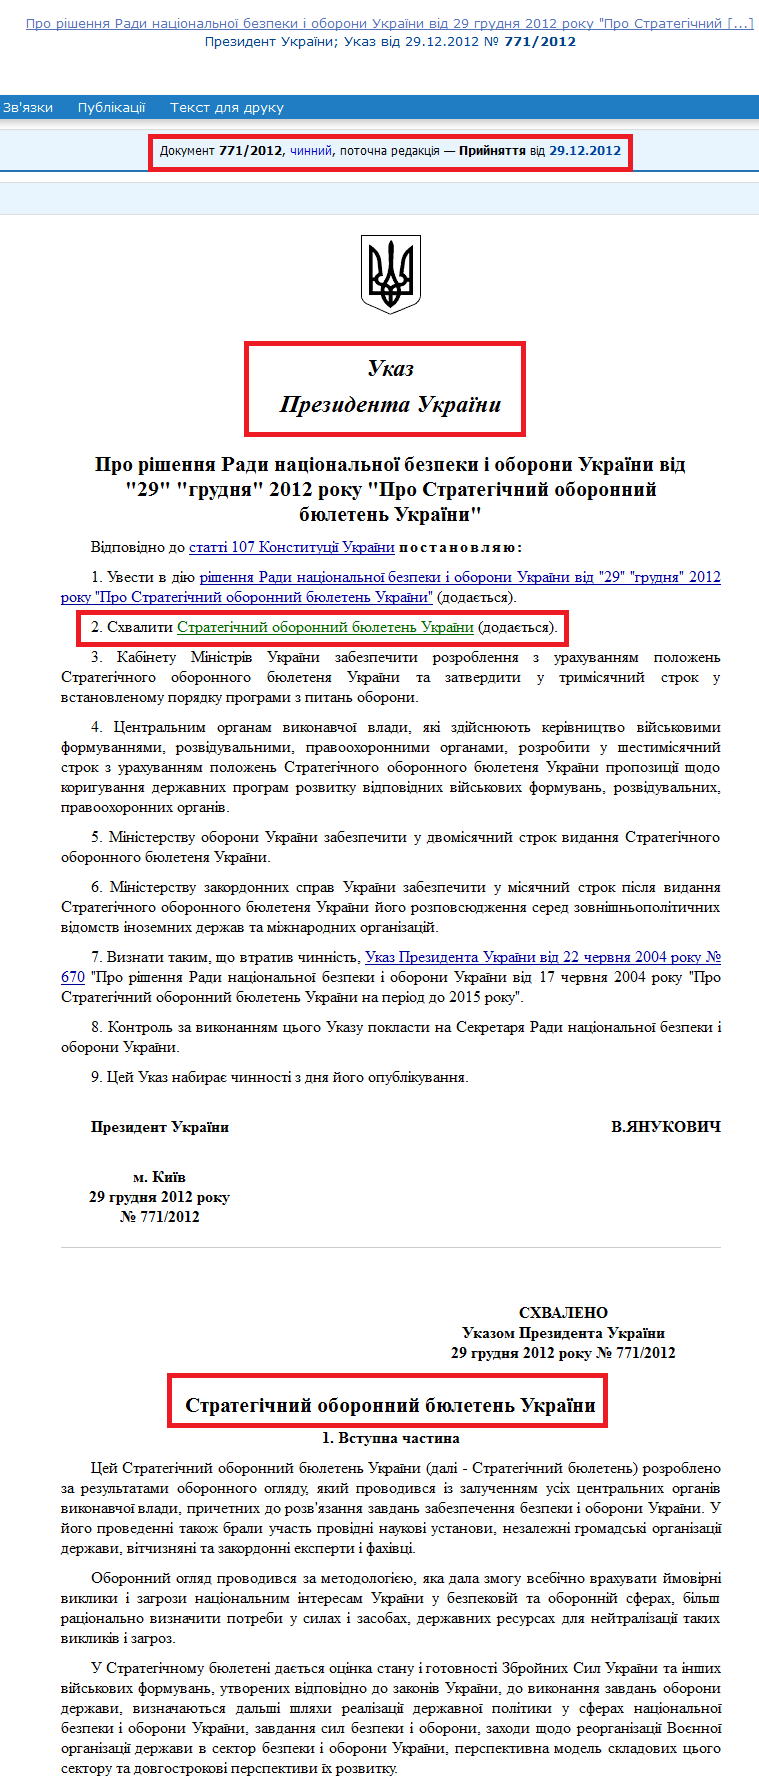 http://zakon4.rada.gov.ua/laws/show/771/2012/